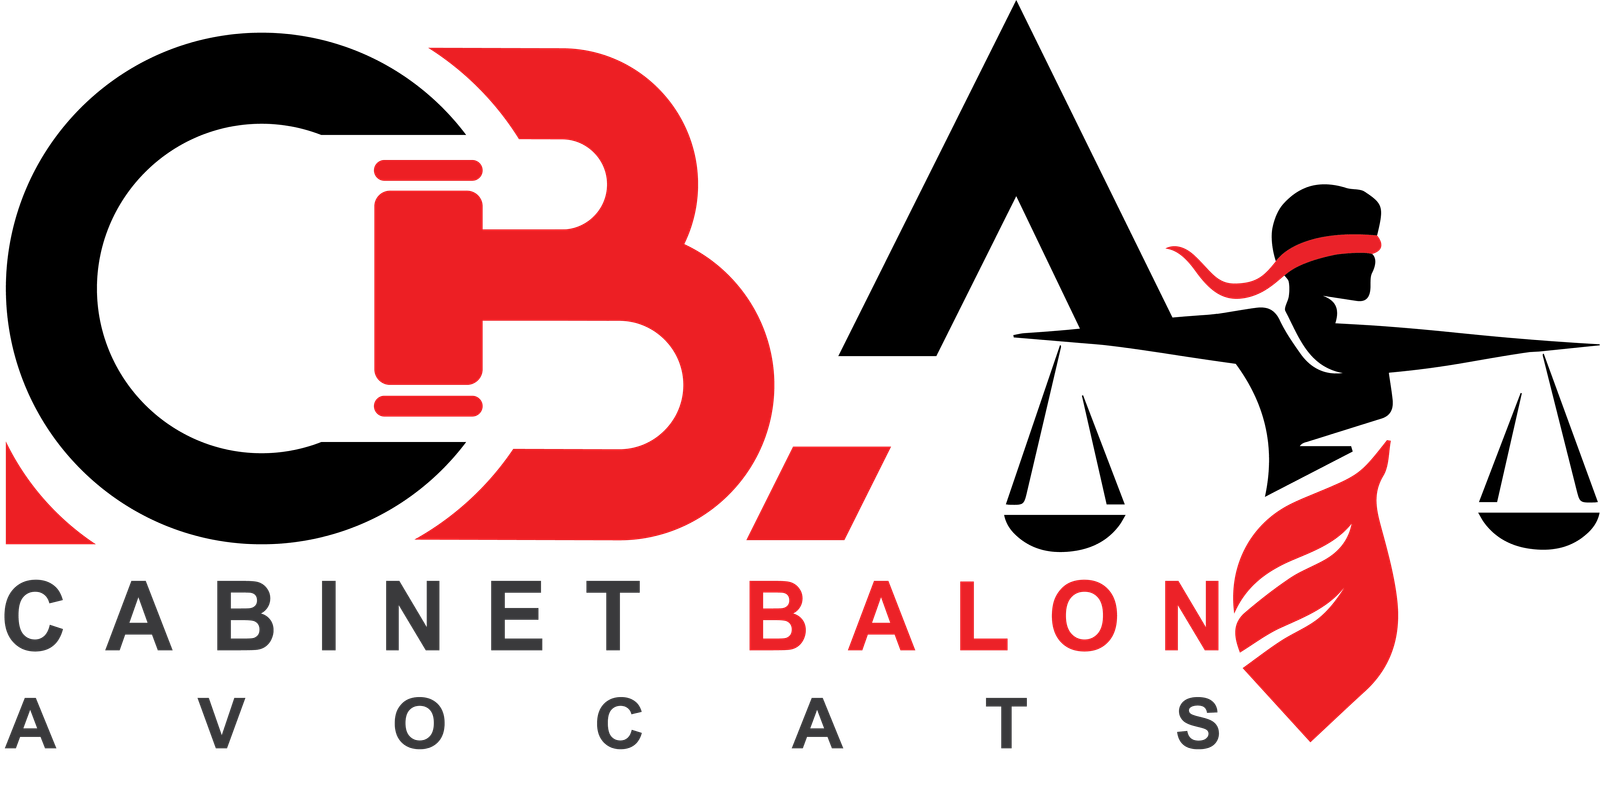 Cabinet-balon-avocats-logo